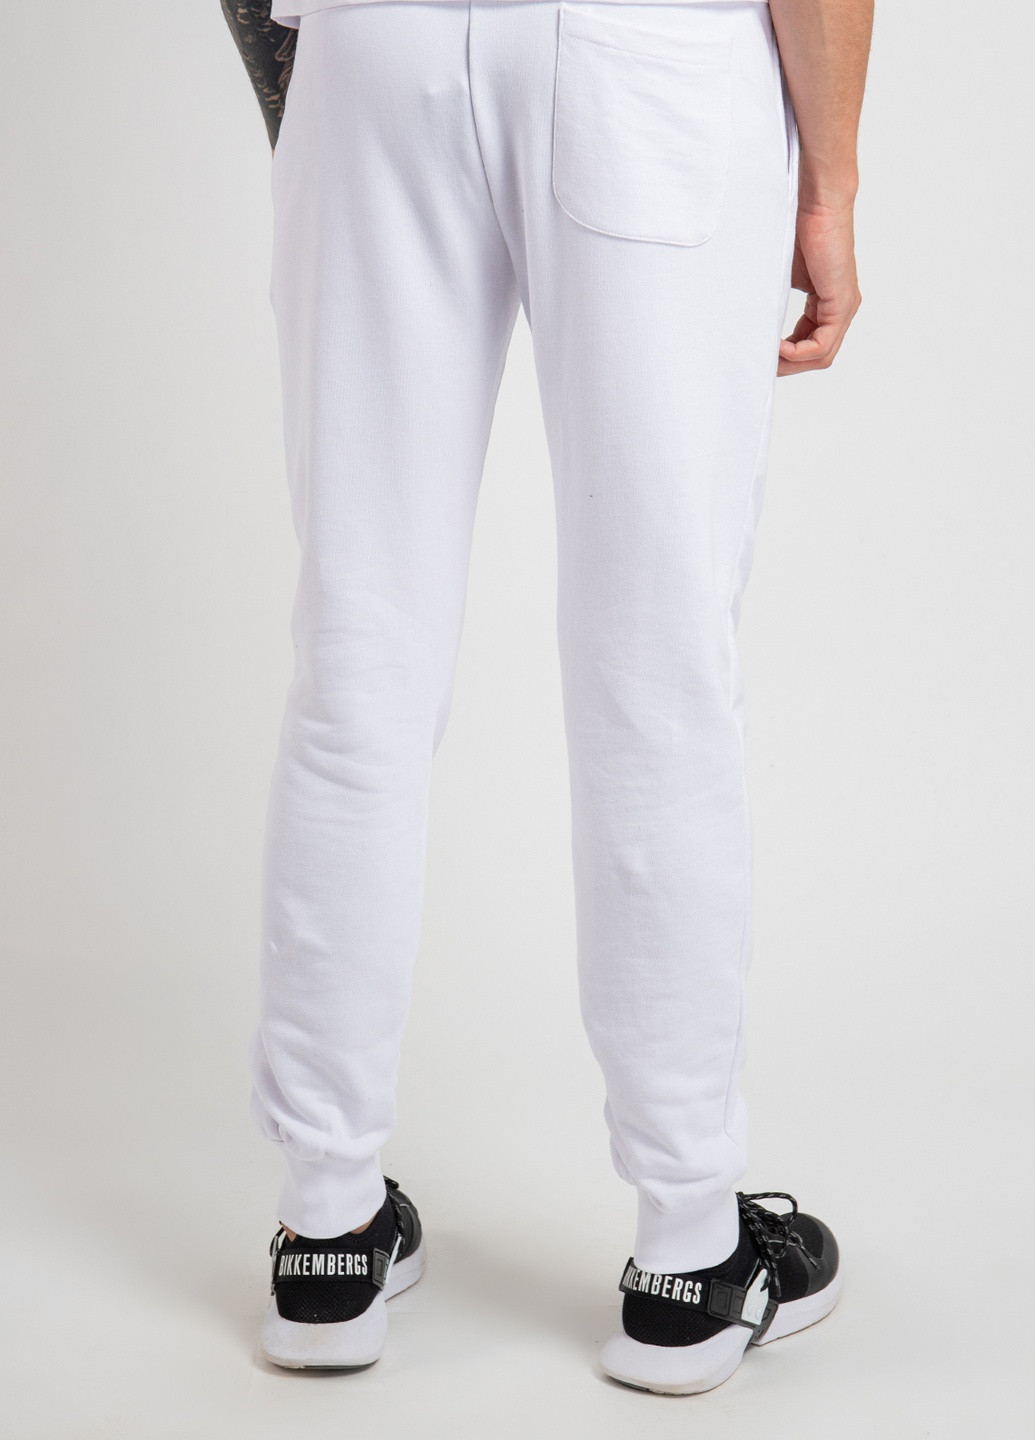 Белые демисезонные брюки Nasa